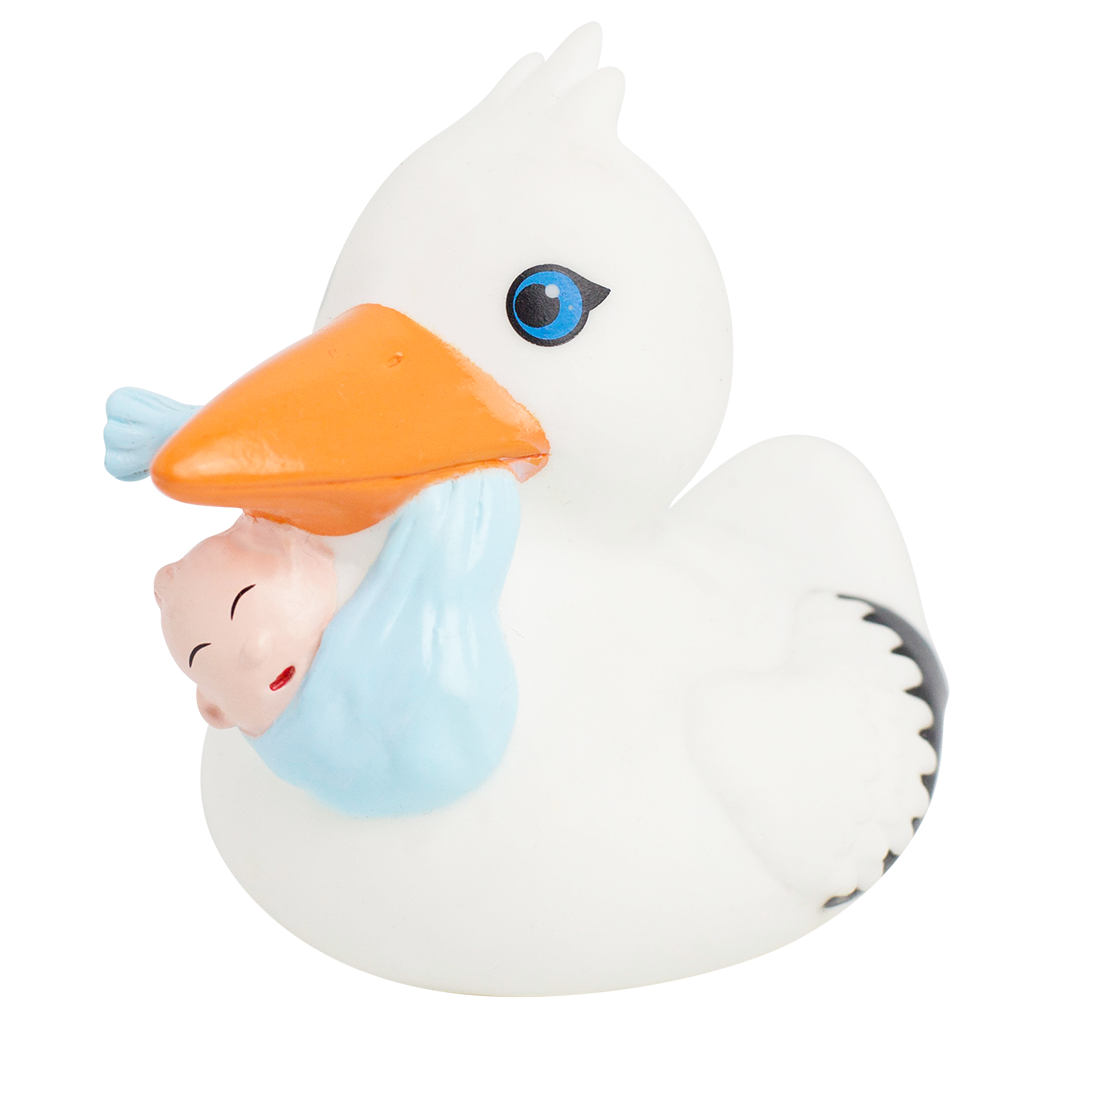 Badeente Storch mit Baby Quietscheente Quietscheentchen Plastikente 